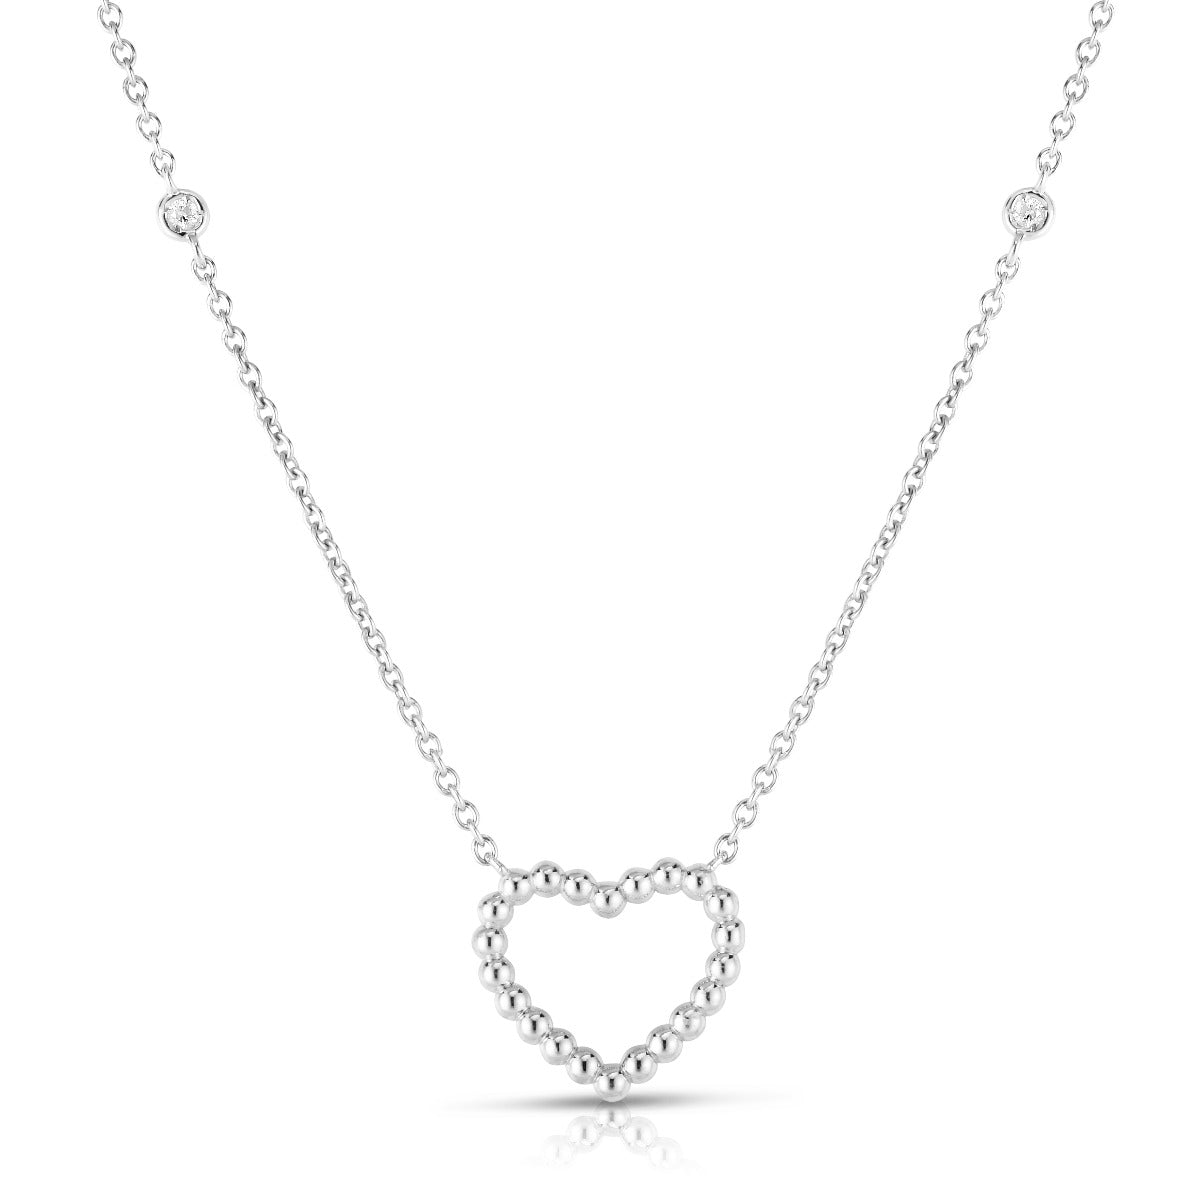 14K Gold & Diamonds Popcorn Heart Charm Necklace